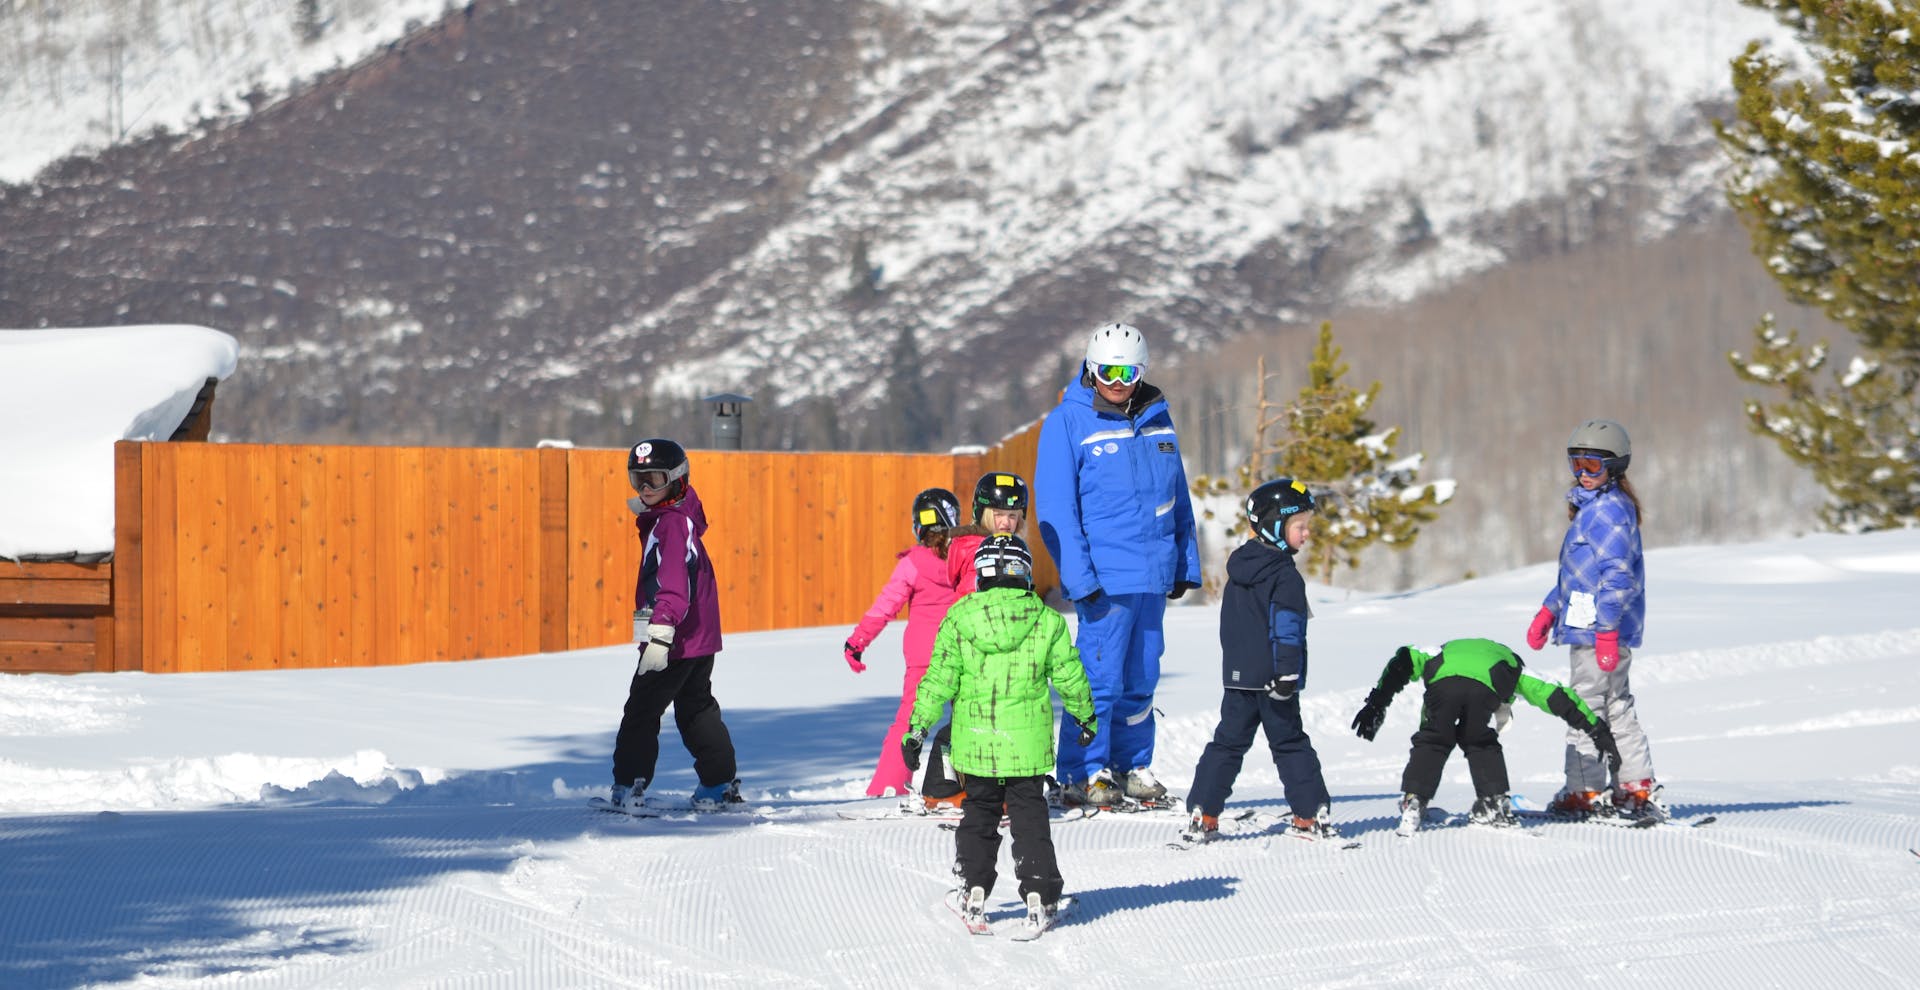 Child ski group lesson at Vail Ski Resort